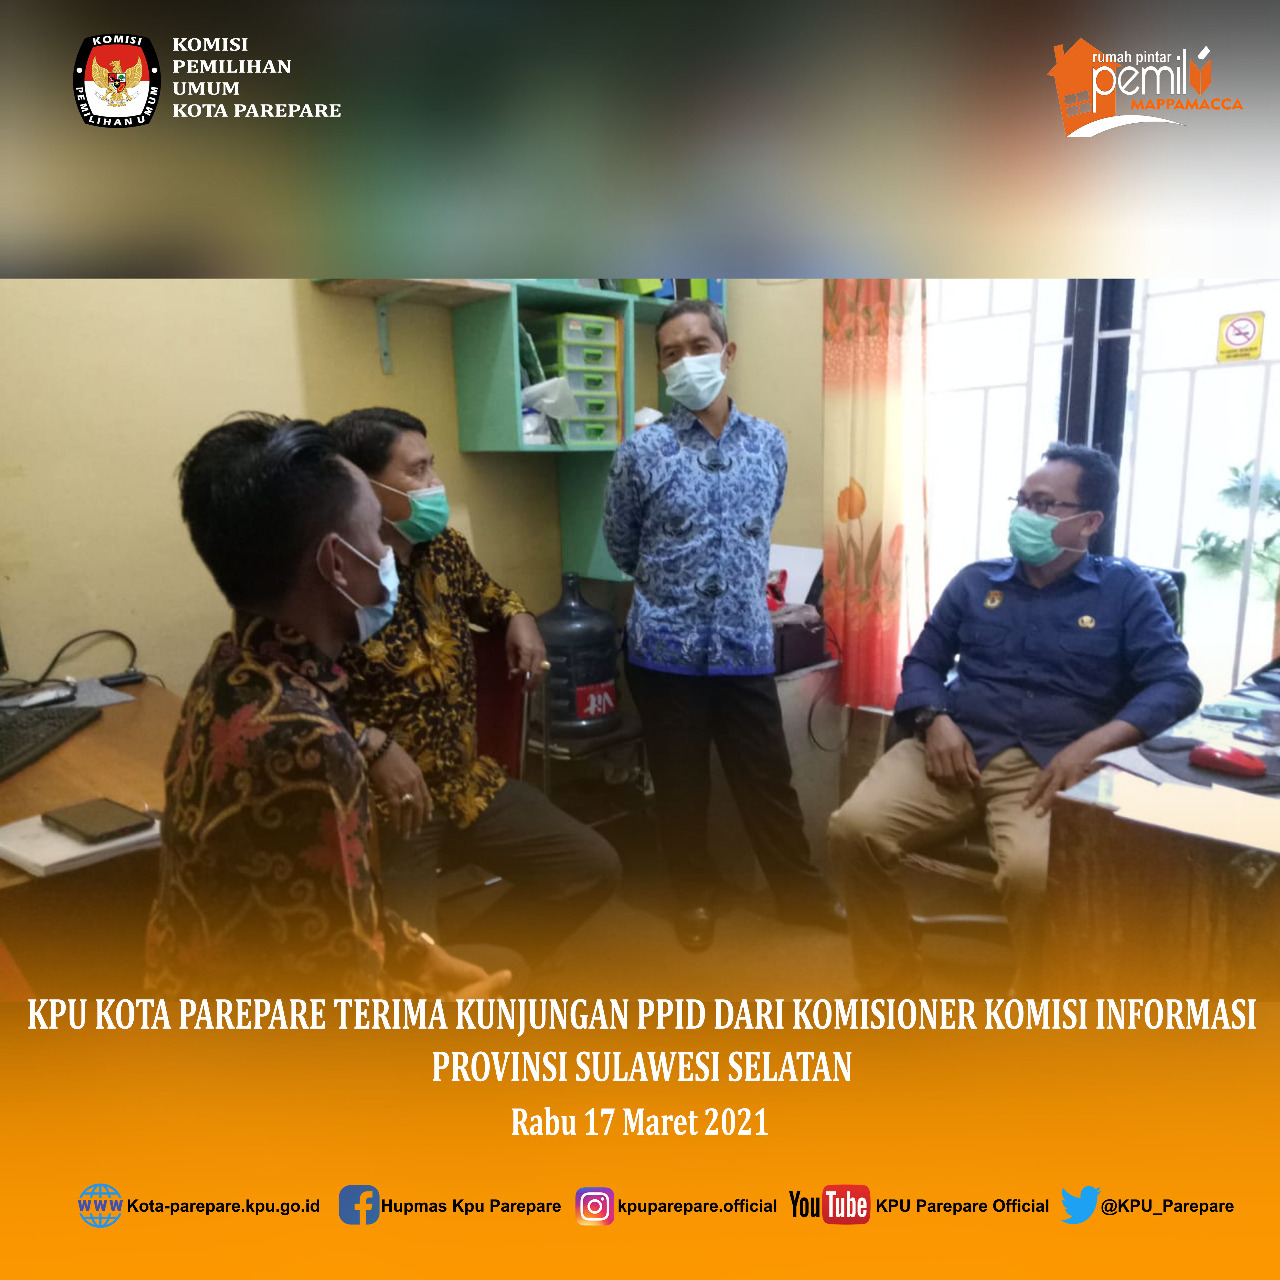 Kunjungan Komisioner Komisi Informasi Provinsi Sulawesi Selatan di PPID KPU Kota Parepare